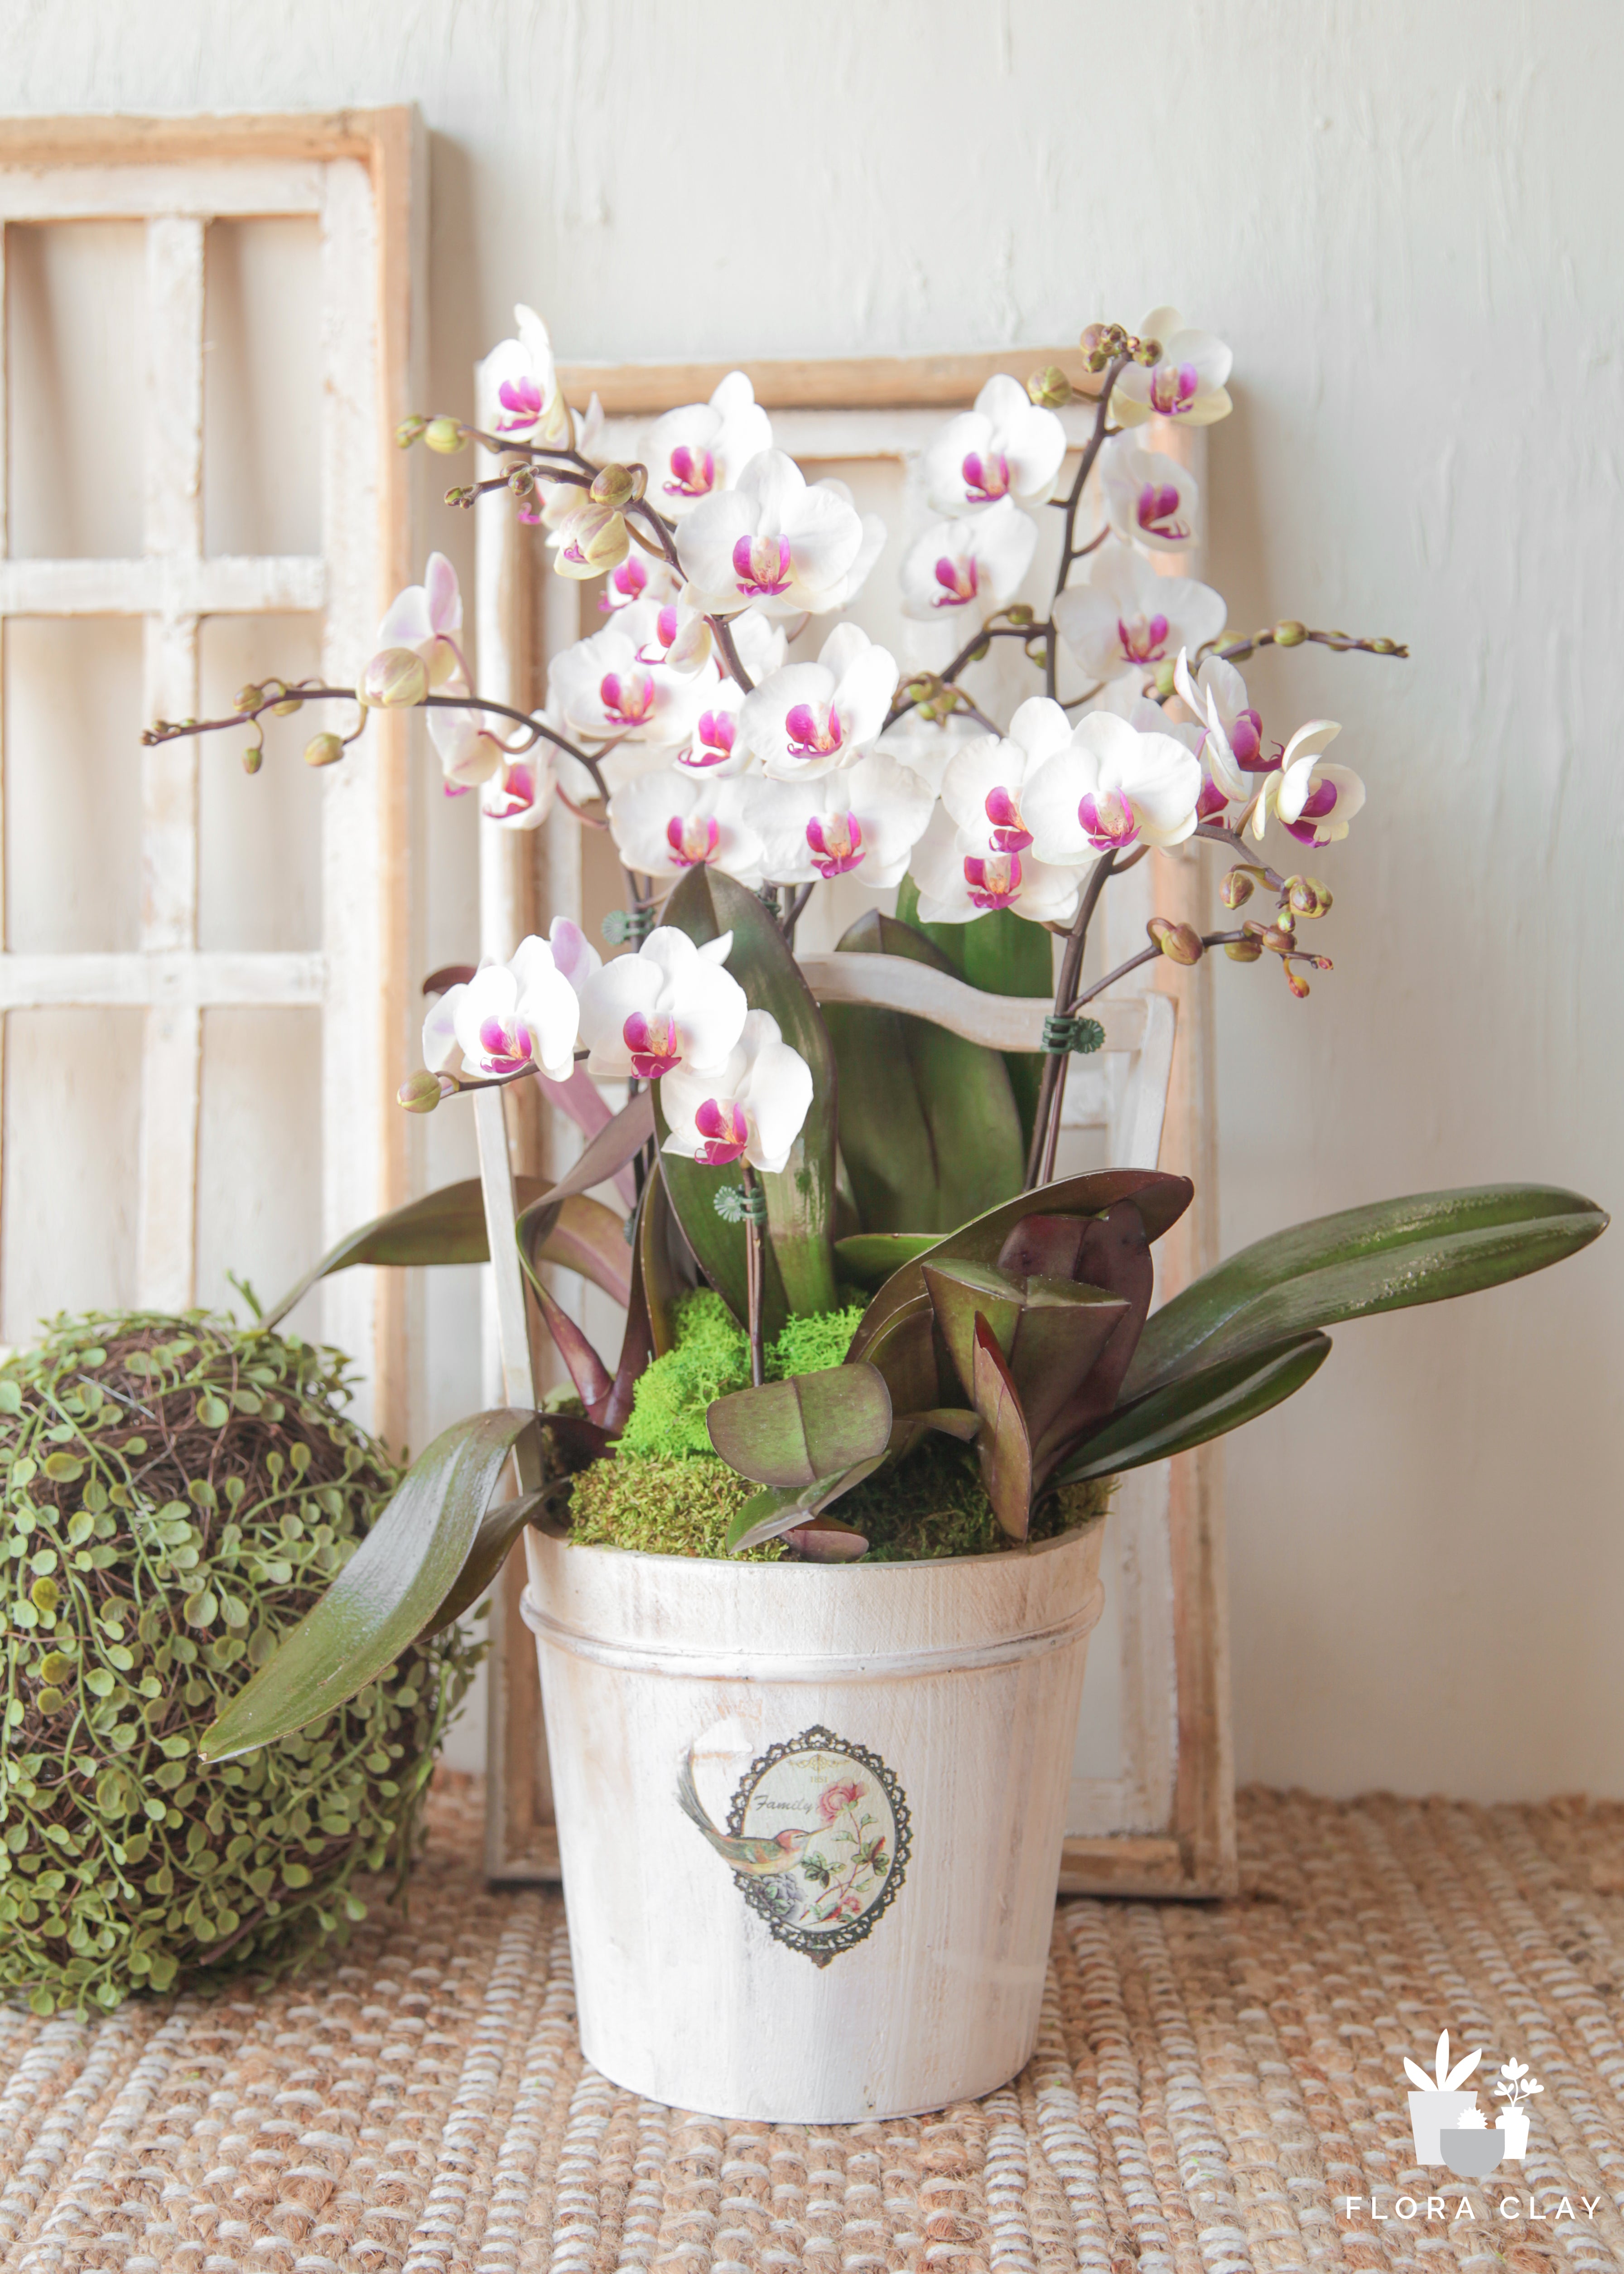 confection-orchid-arrangement-floraclay-1.jpg